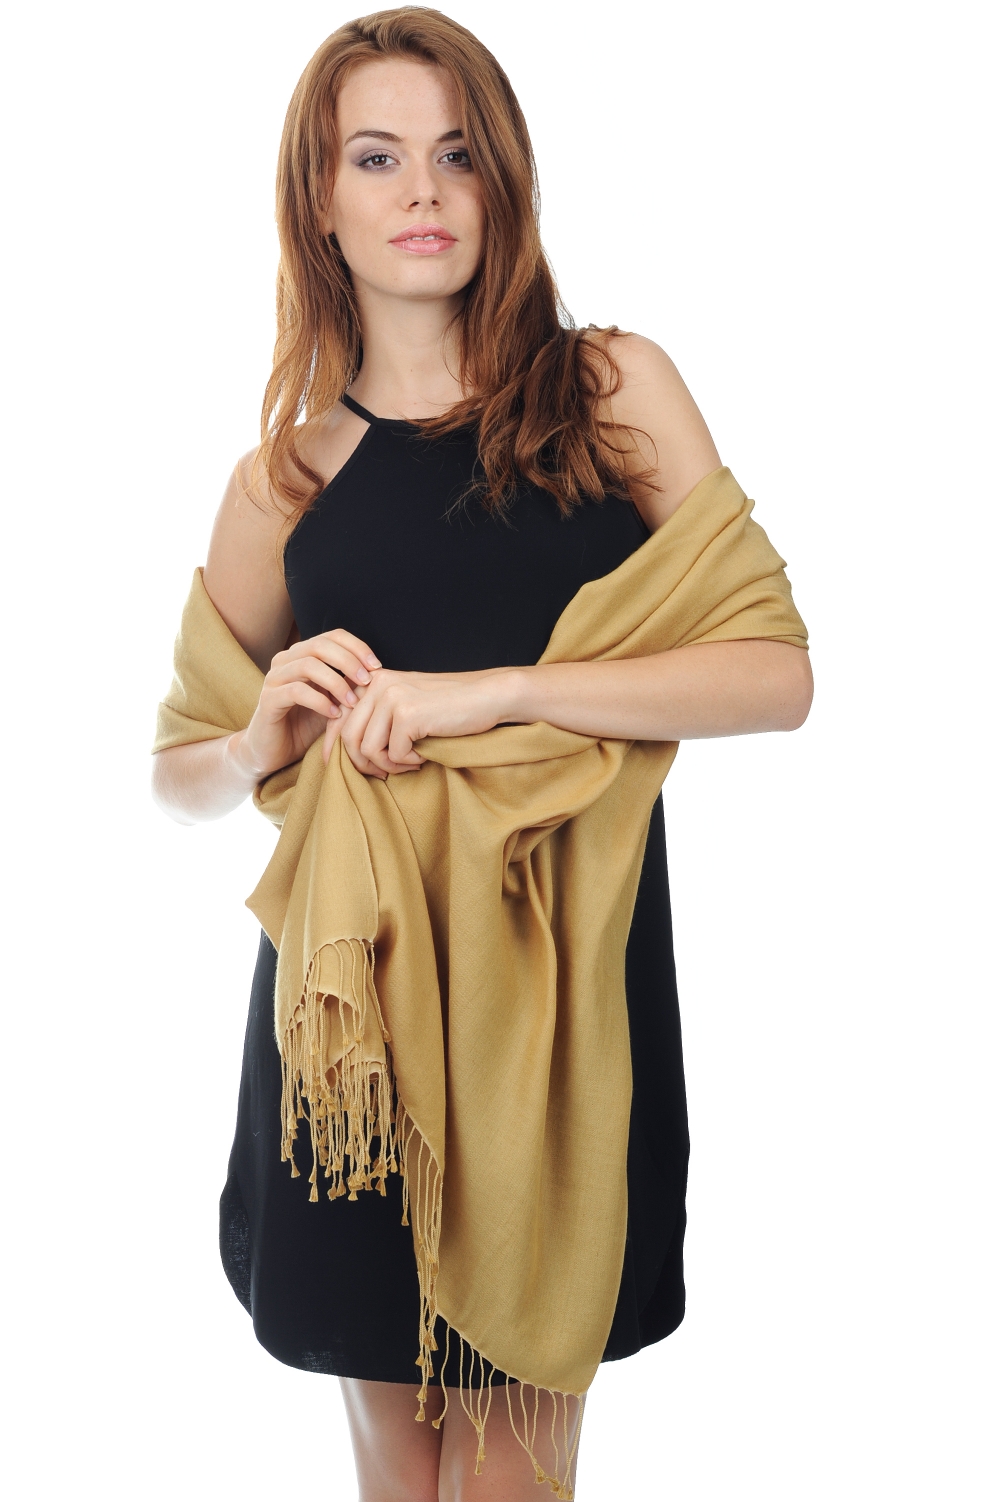 Cashmere & Silk ladies shawls platine bronze 201 cm x 71 cm